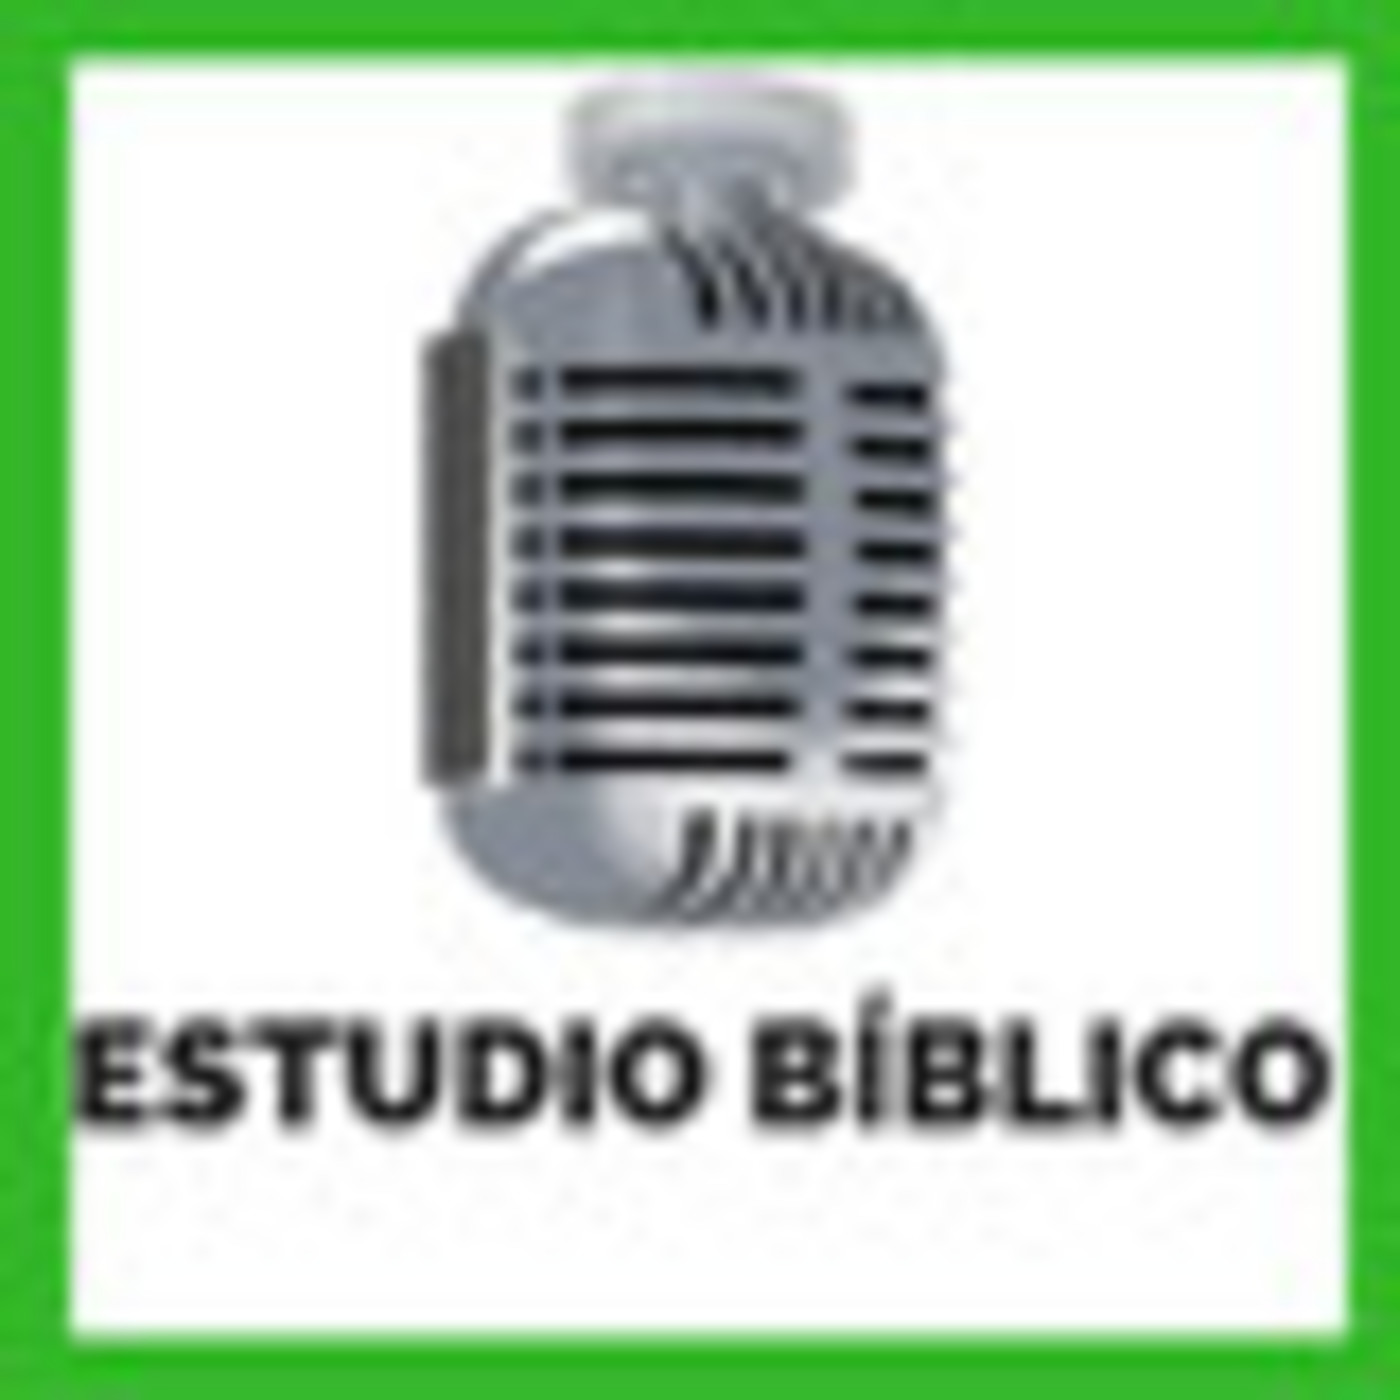 2019-08-04 | Estudio Bíblico | SERVIR A LOS NECESITADOS - IDOLATRÍA Y OPRESIÓN